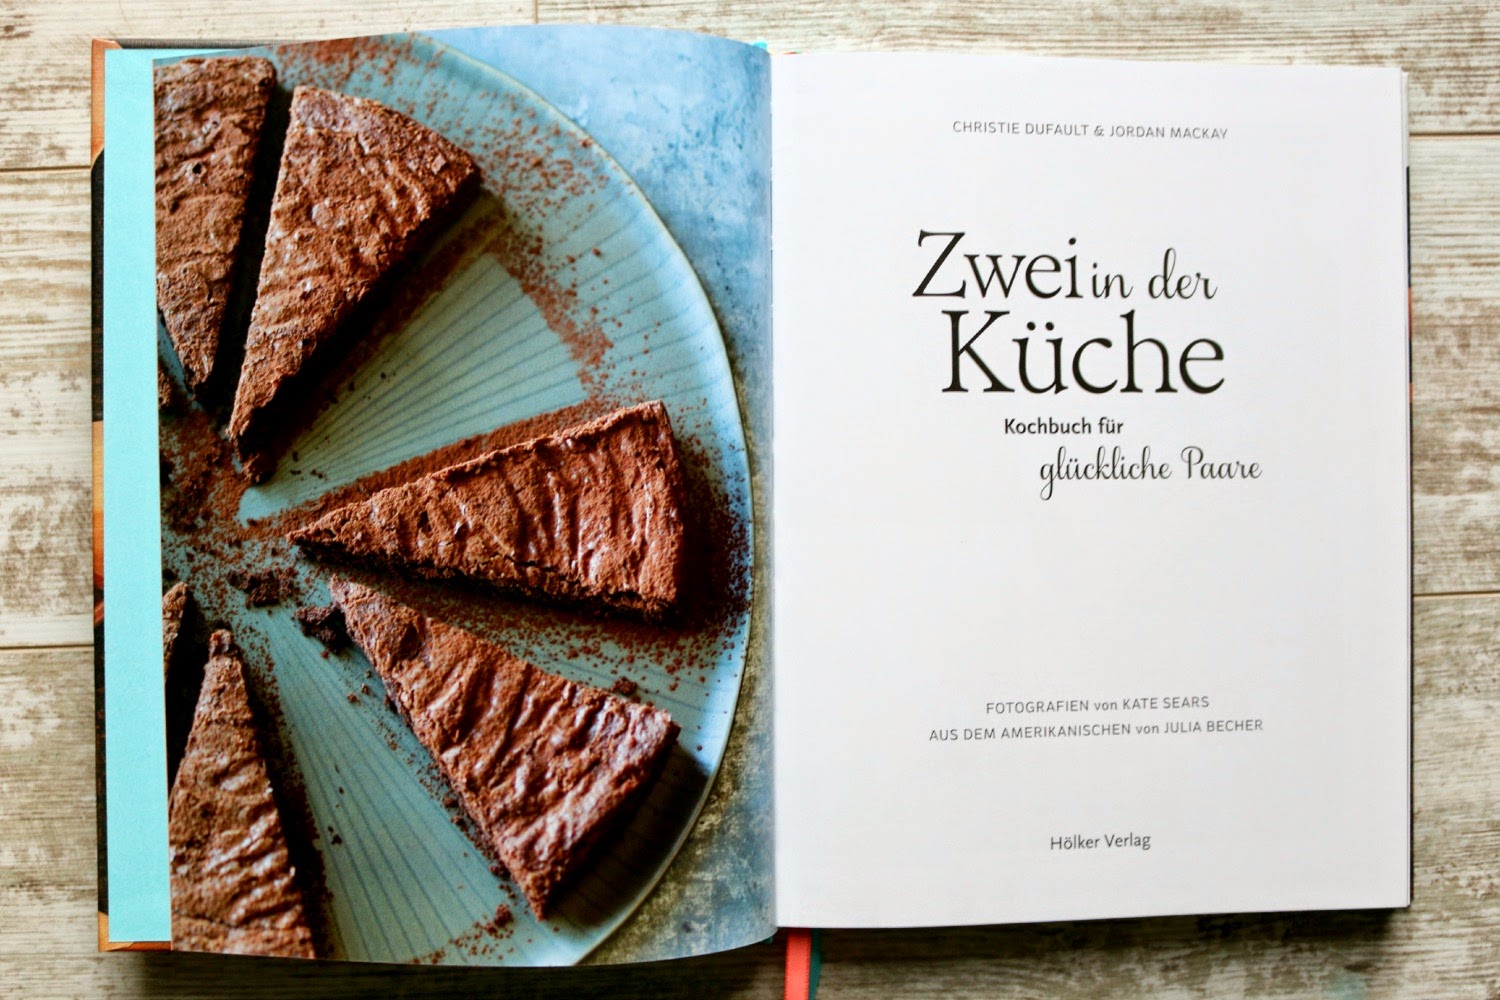 Kochbuch, Rezension, Hölker Verlag